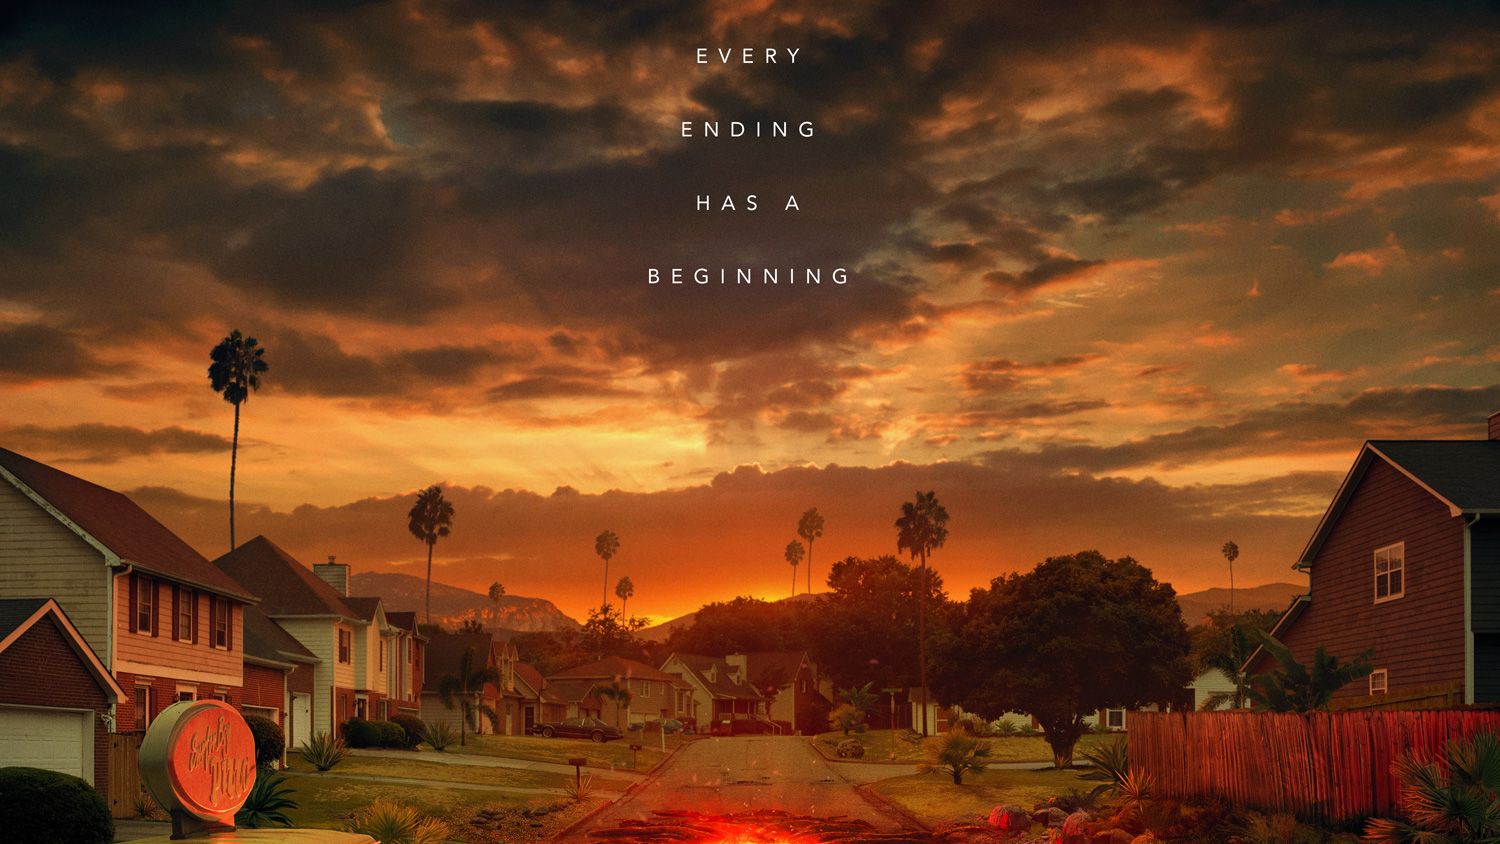 Stranger Things' Season 4 Trailer Reveals New Horrors